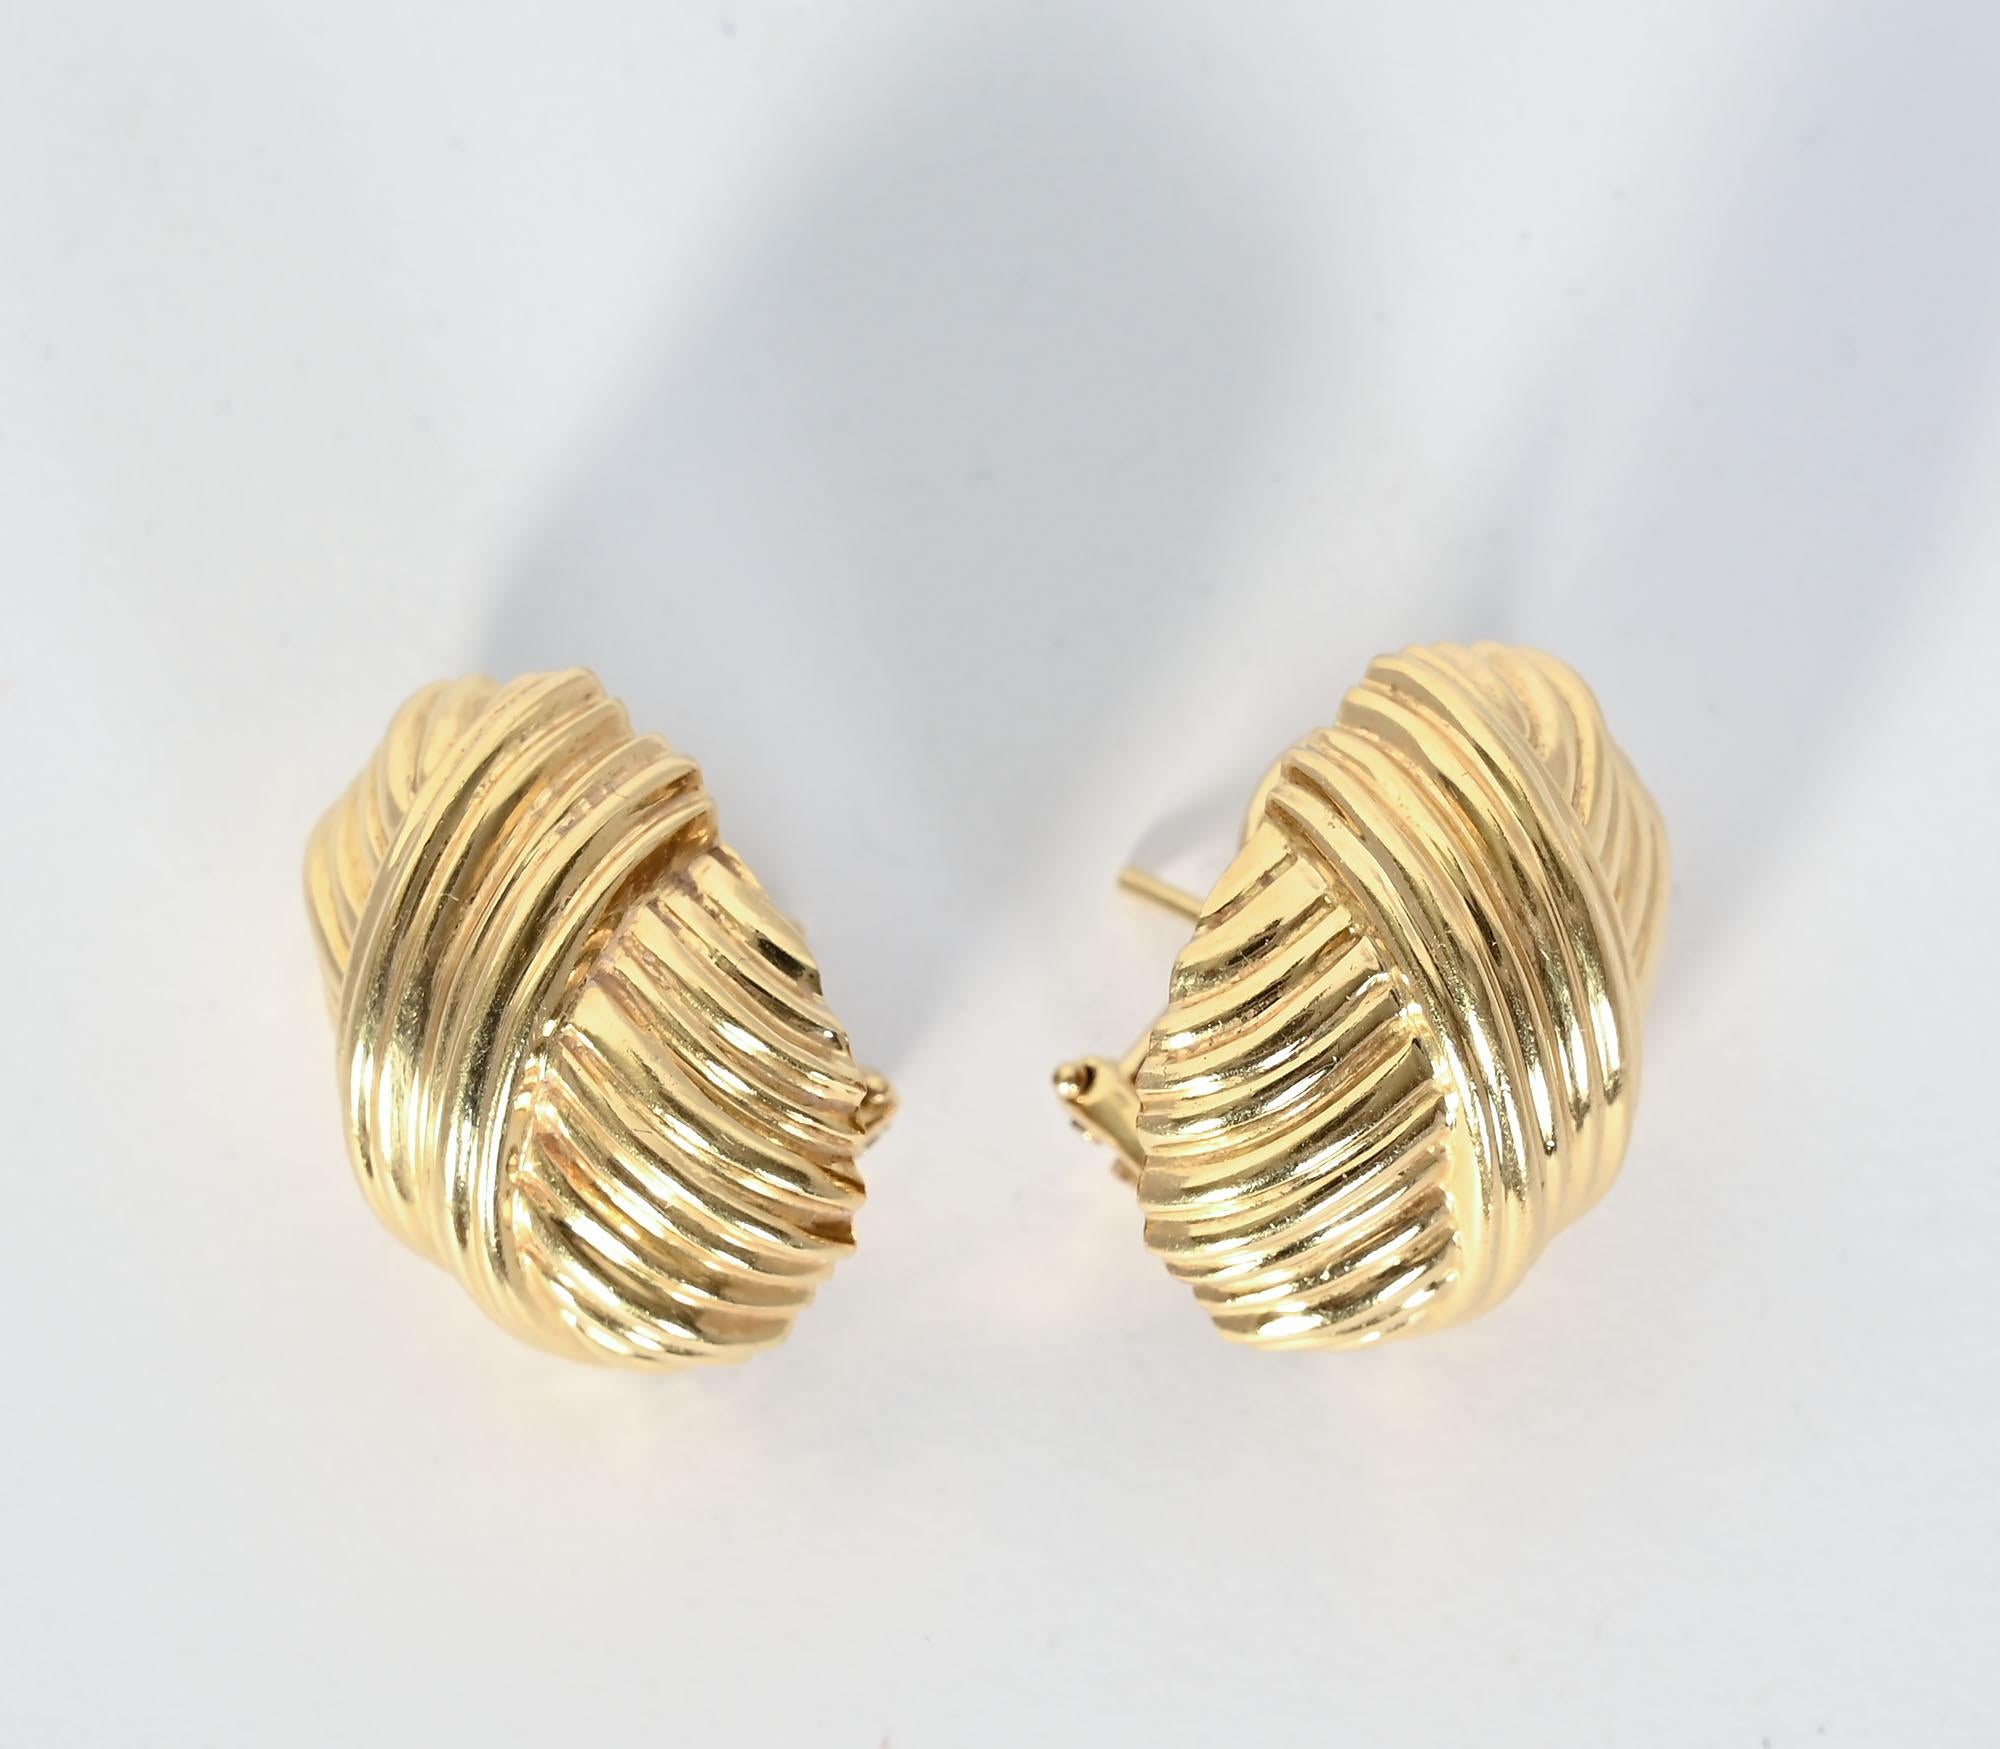 Maßgeschneiderte Ohrringe aus 18 Karat Gold von Tiffany. Der ovale Ohrring hat eine gerippte Oberfläche, über die eine Diagonale mit der gleichen Textur für zusätzliches Interesse sorgt. Die Ohrringe sind einen halben Zentimeter breit und einen